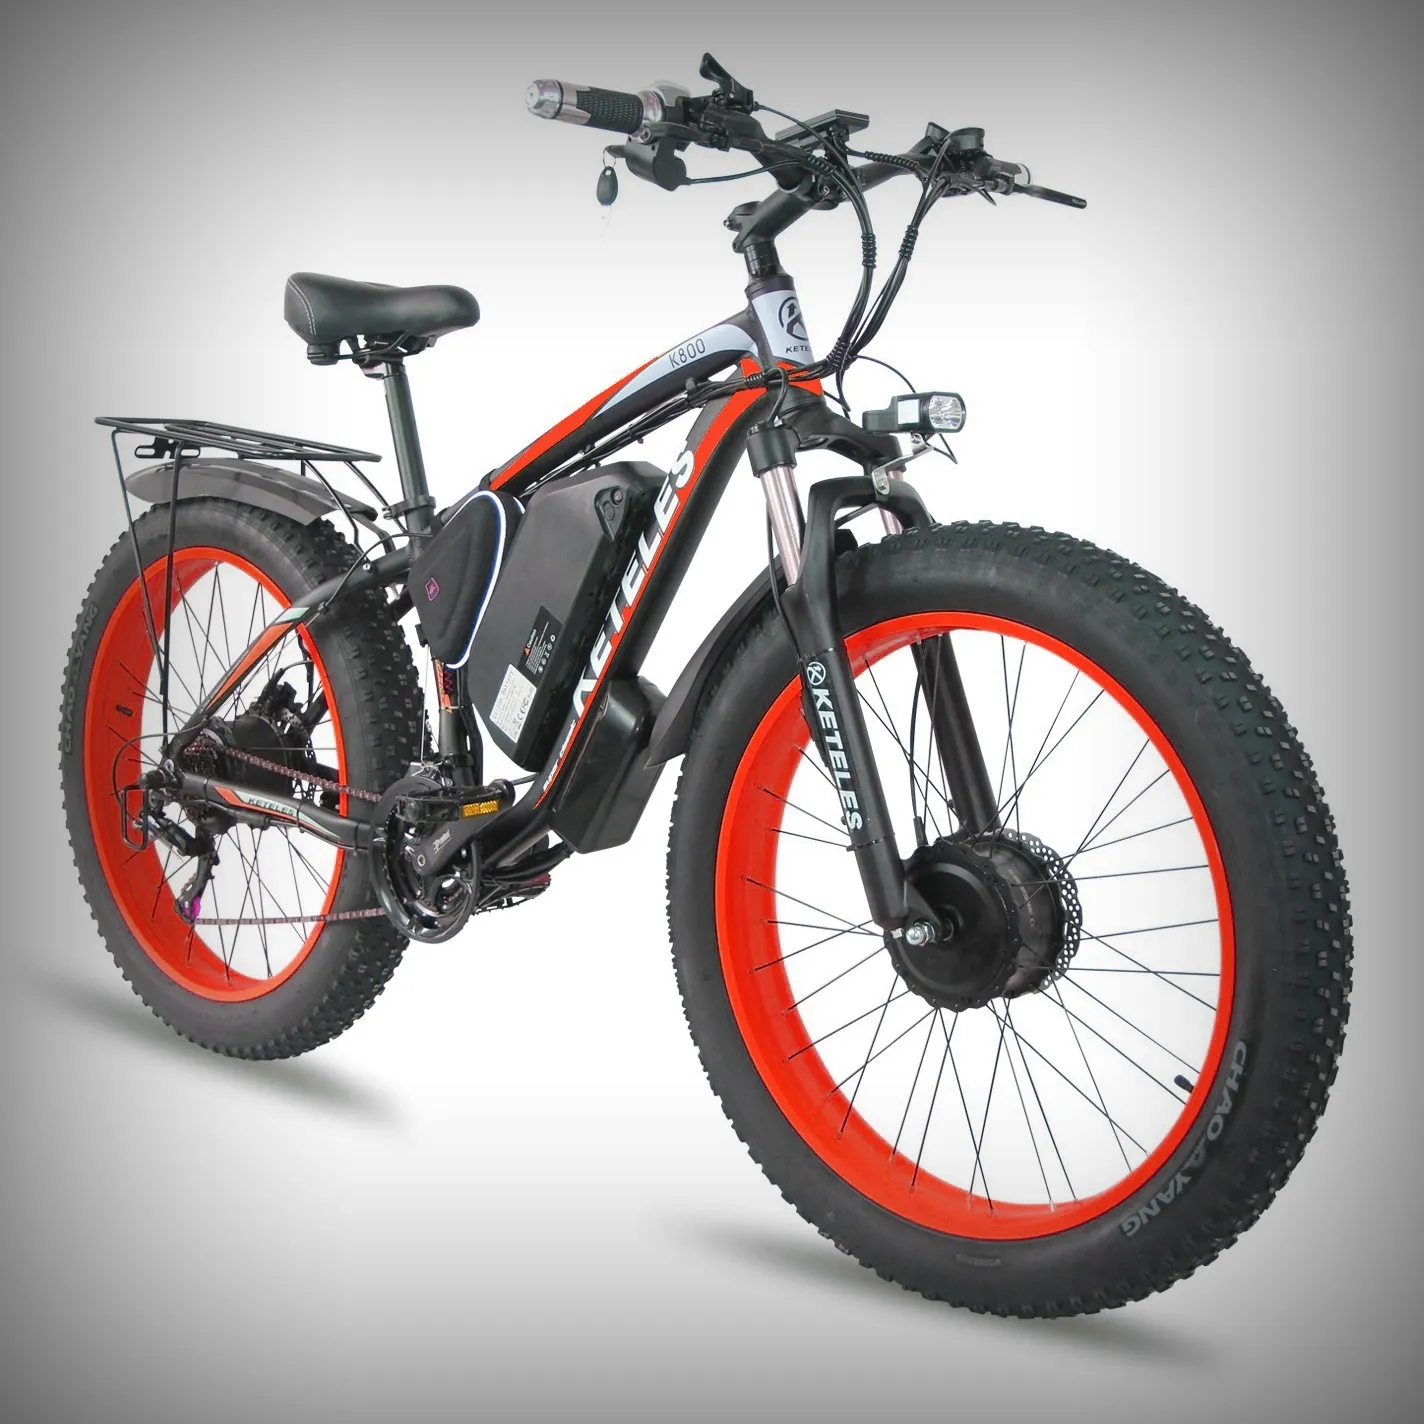 KETELES K800 1000W 17.5AH Bicicleta eléctrica Dos ruedas motrices E-Bike Fat Tire Bicicleta eléctrica de doble motor para hombres 26 pulgadas